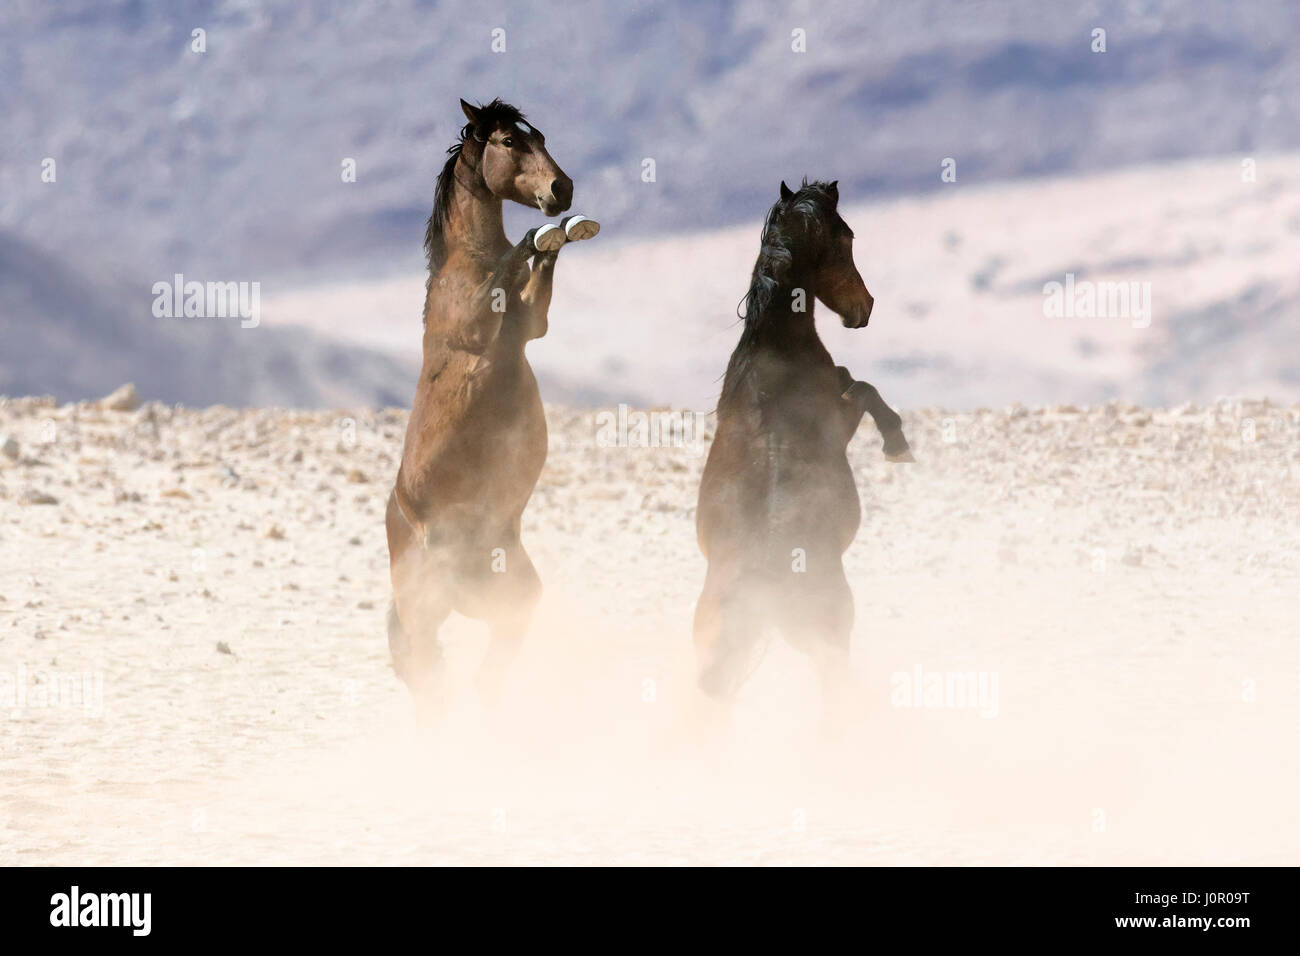 Wild Deserto Namibiano cavalli combattimenti Foto Stock